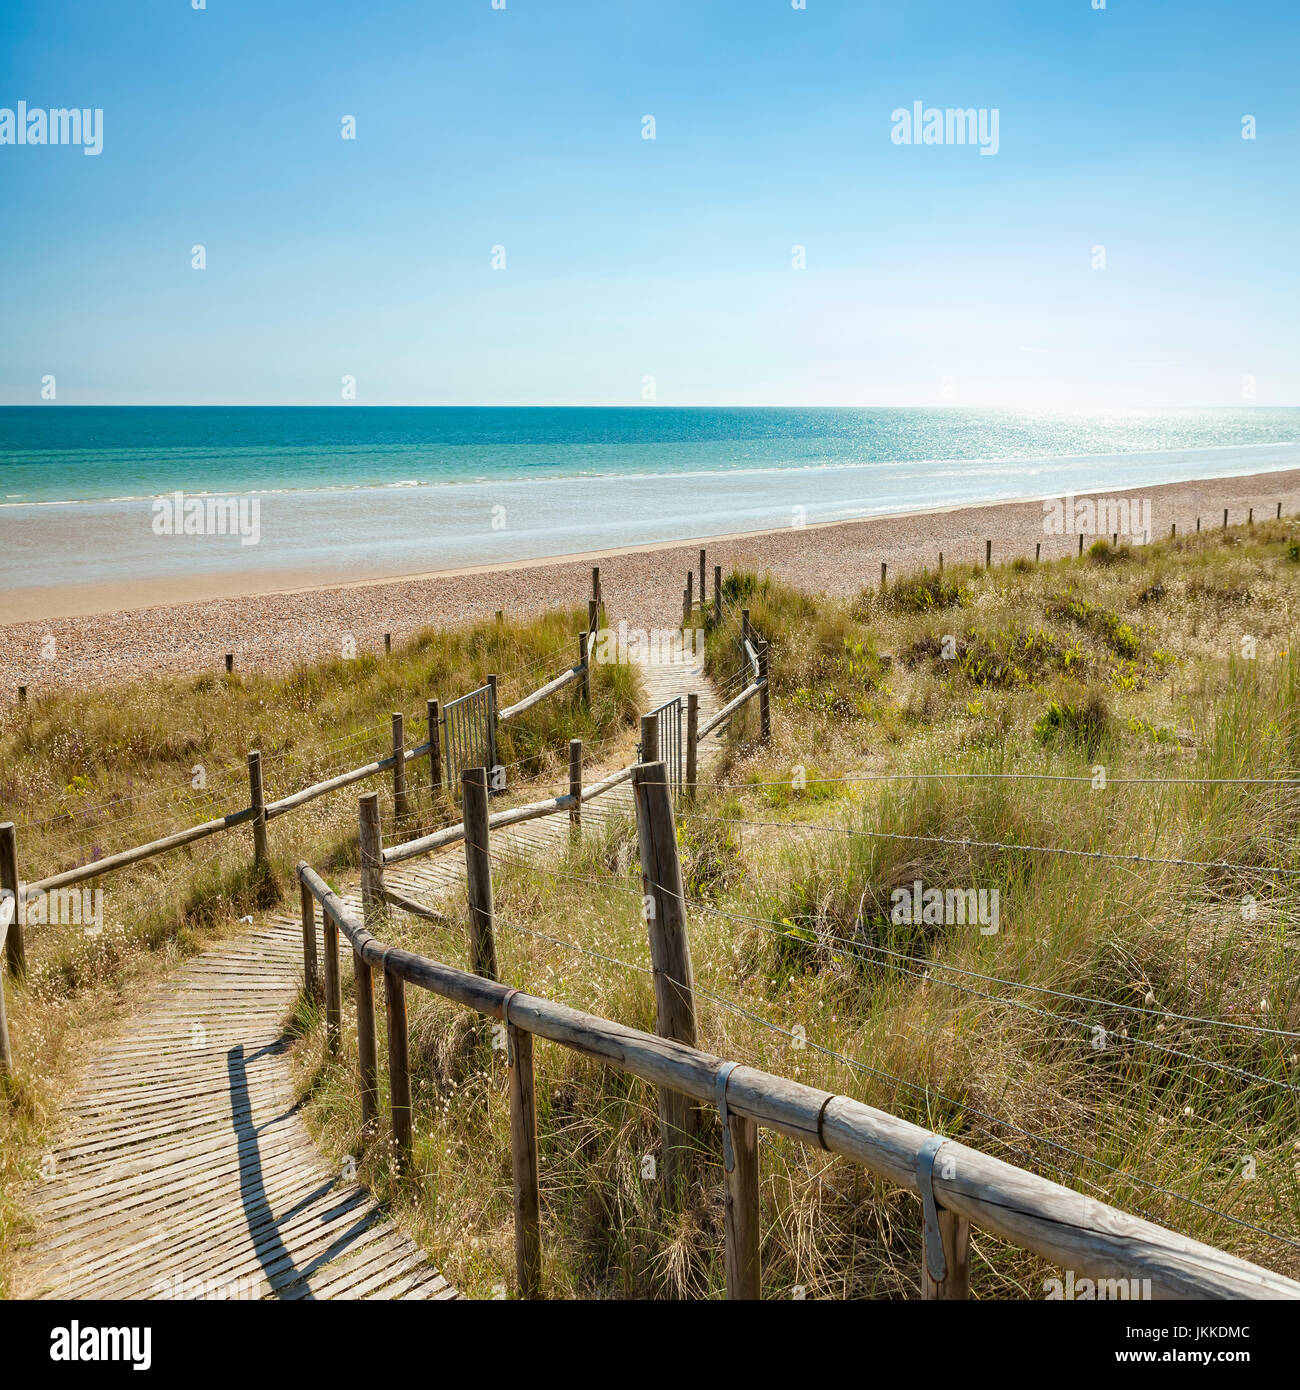 Wooden boardwalk leading into a glistening seascape scene. Stock Photo